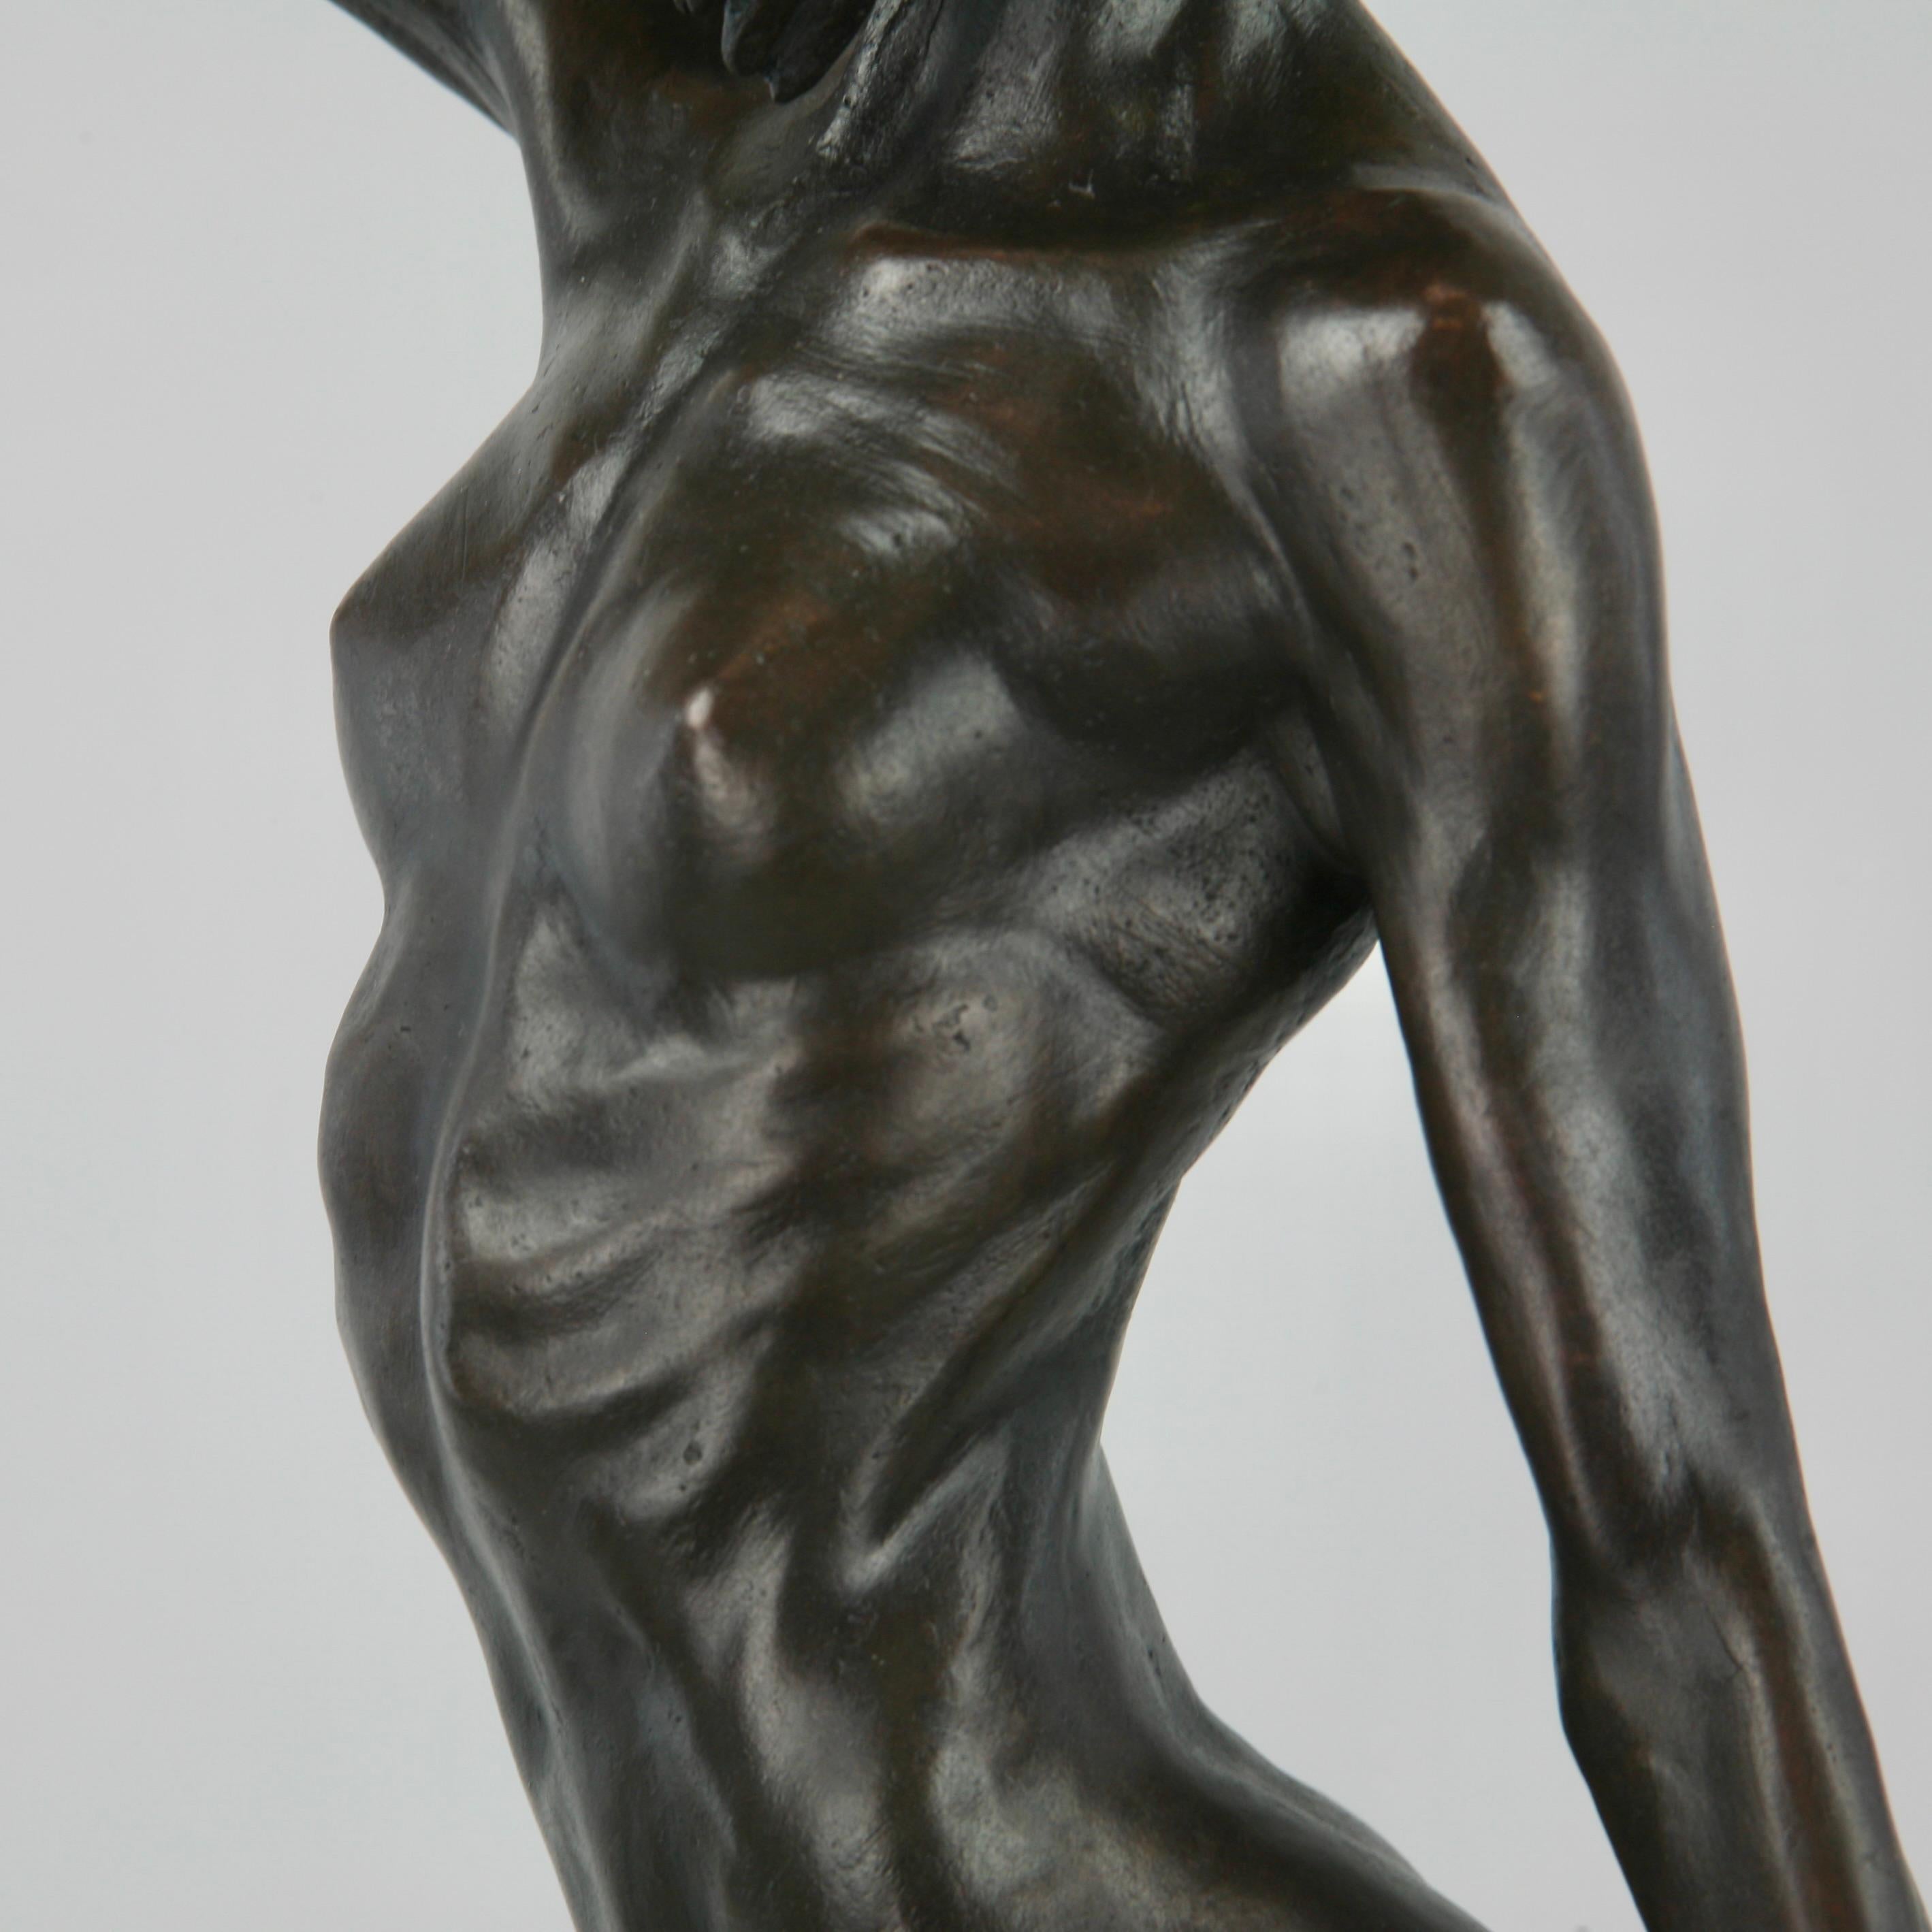 Pole Dancer-original nude figurative bronze sculpture-artwork-contemporary Art For Sale 6